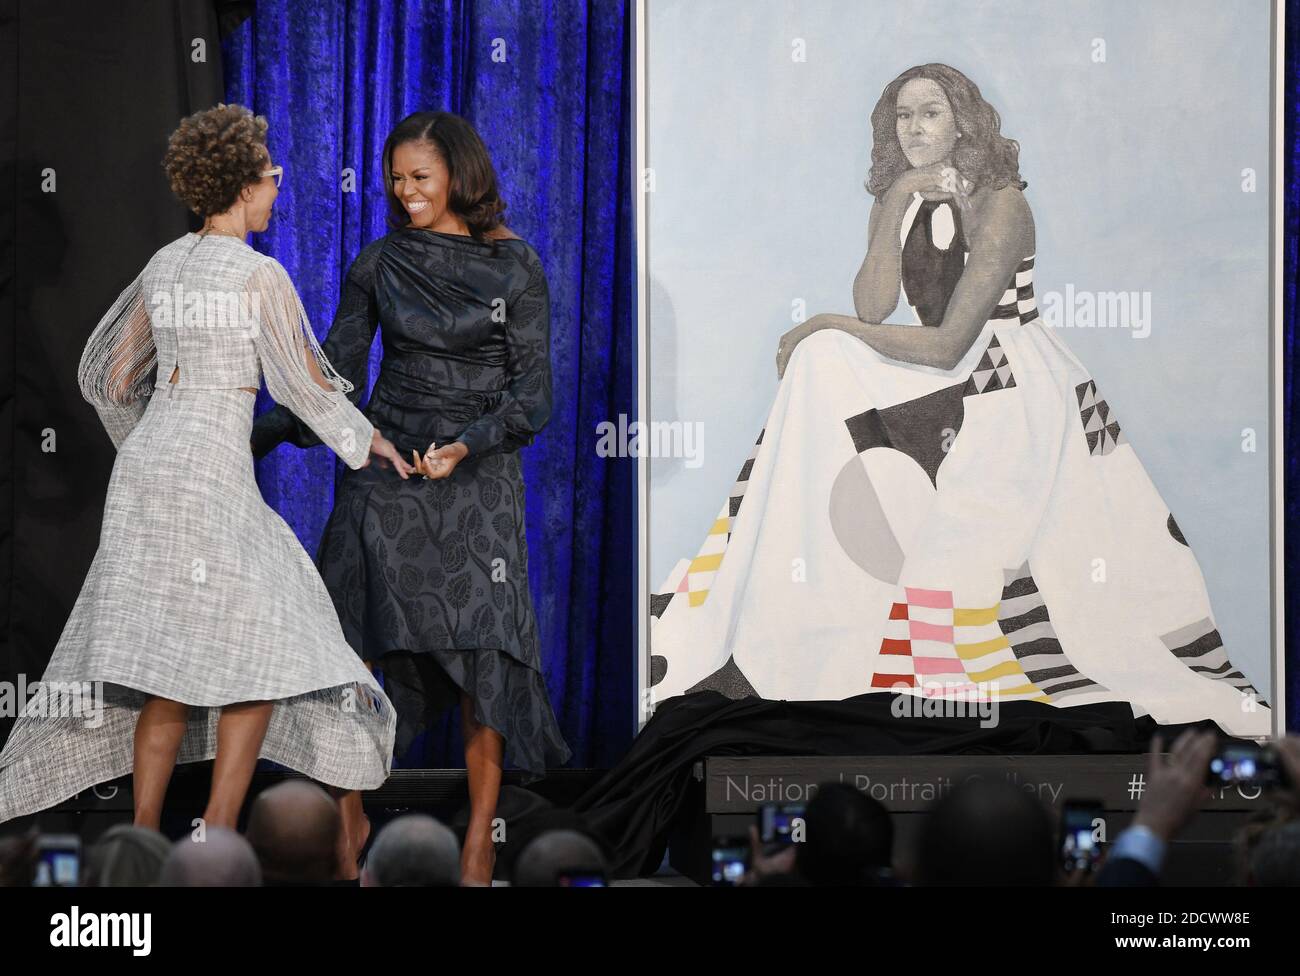 L'ex First Lady Michelle Obama con l'artista Amy Sherald e svela il suo ritratto ufficiale alla National Portrait Gallery , 12 febbraio 2018 a Washington, DC. Foto di Olivier Douliery/Abaca Press Foto Stock